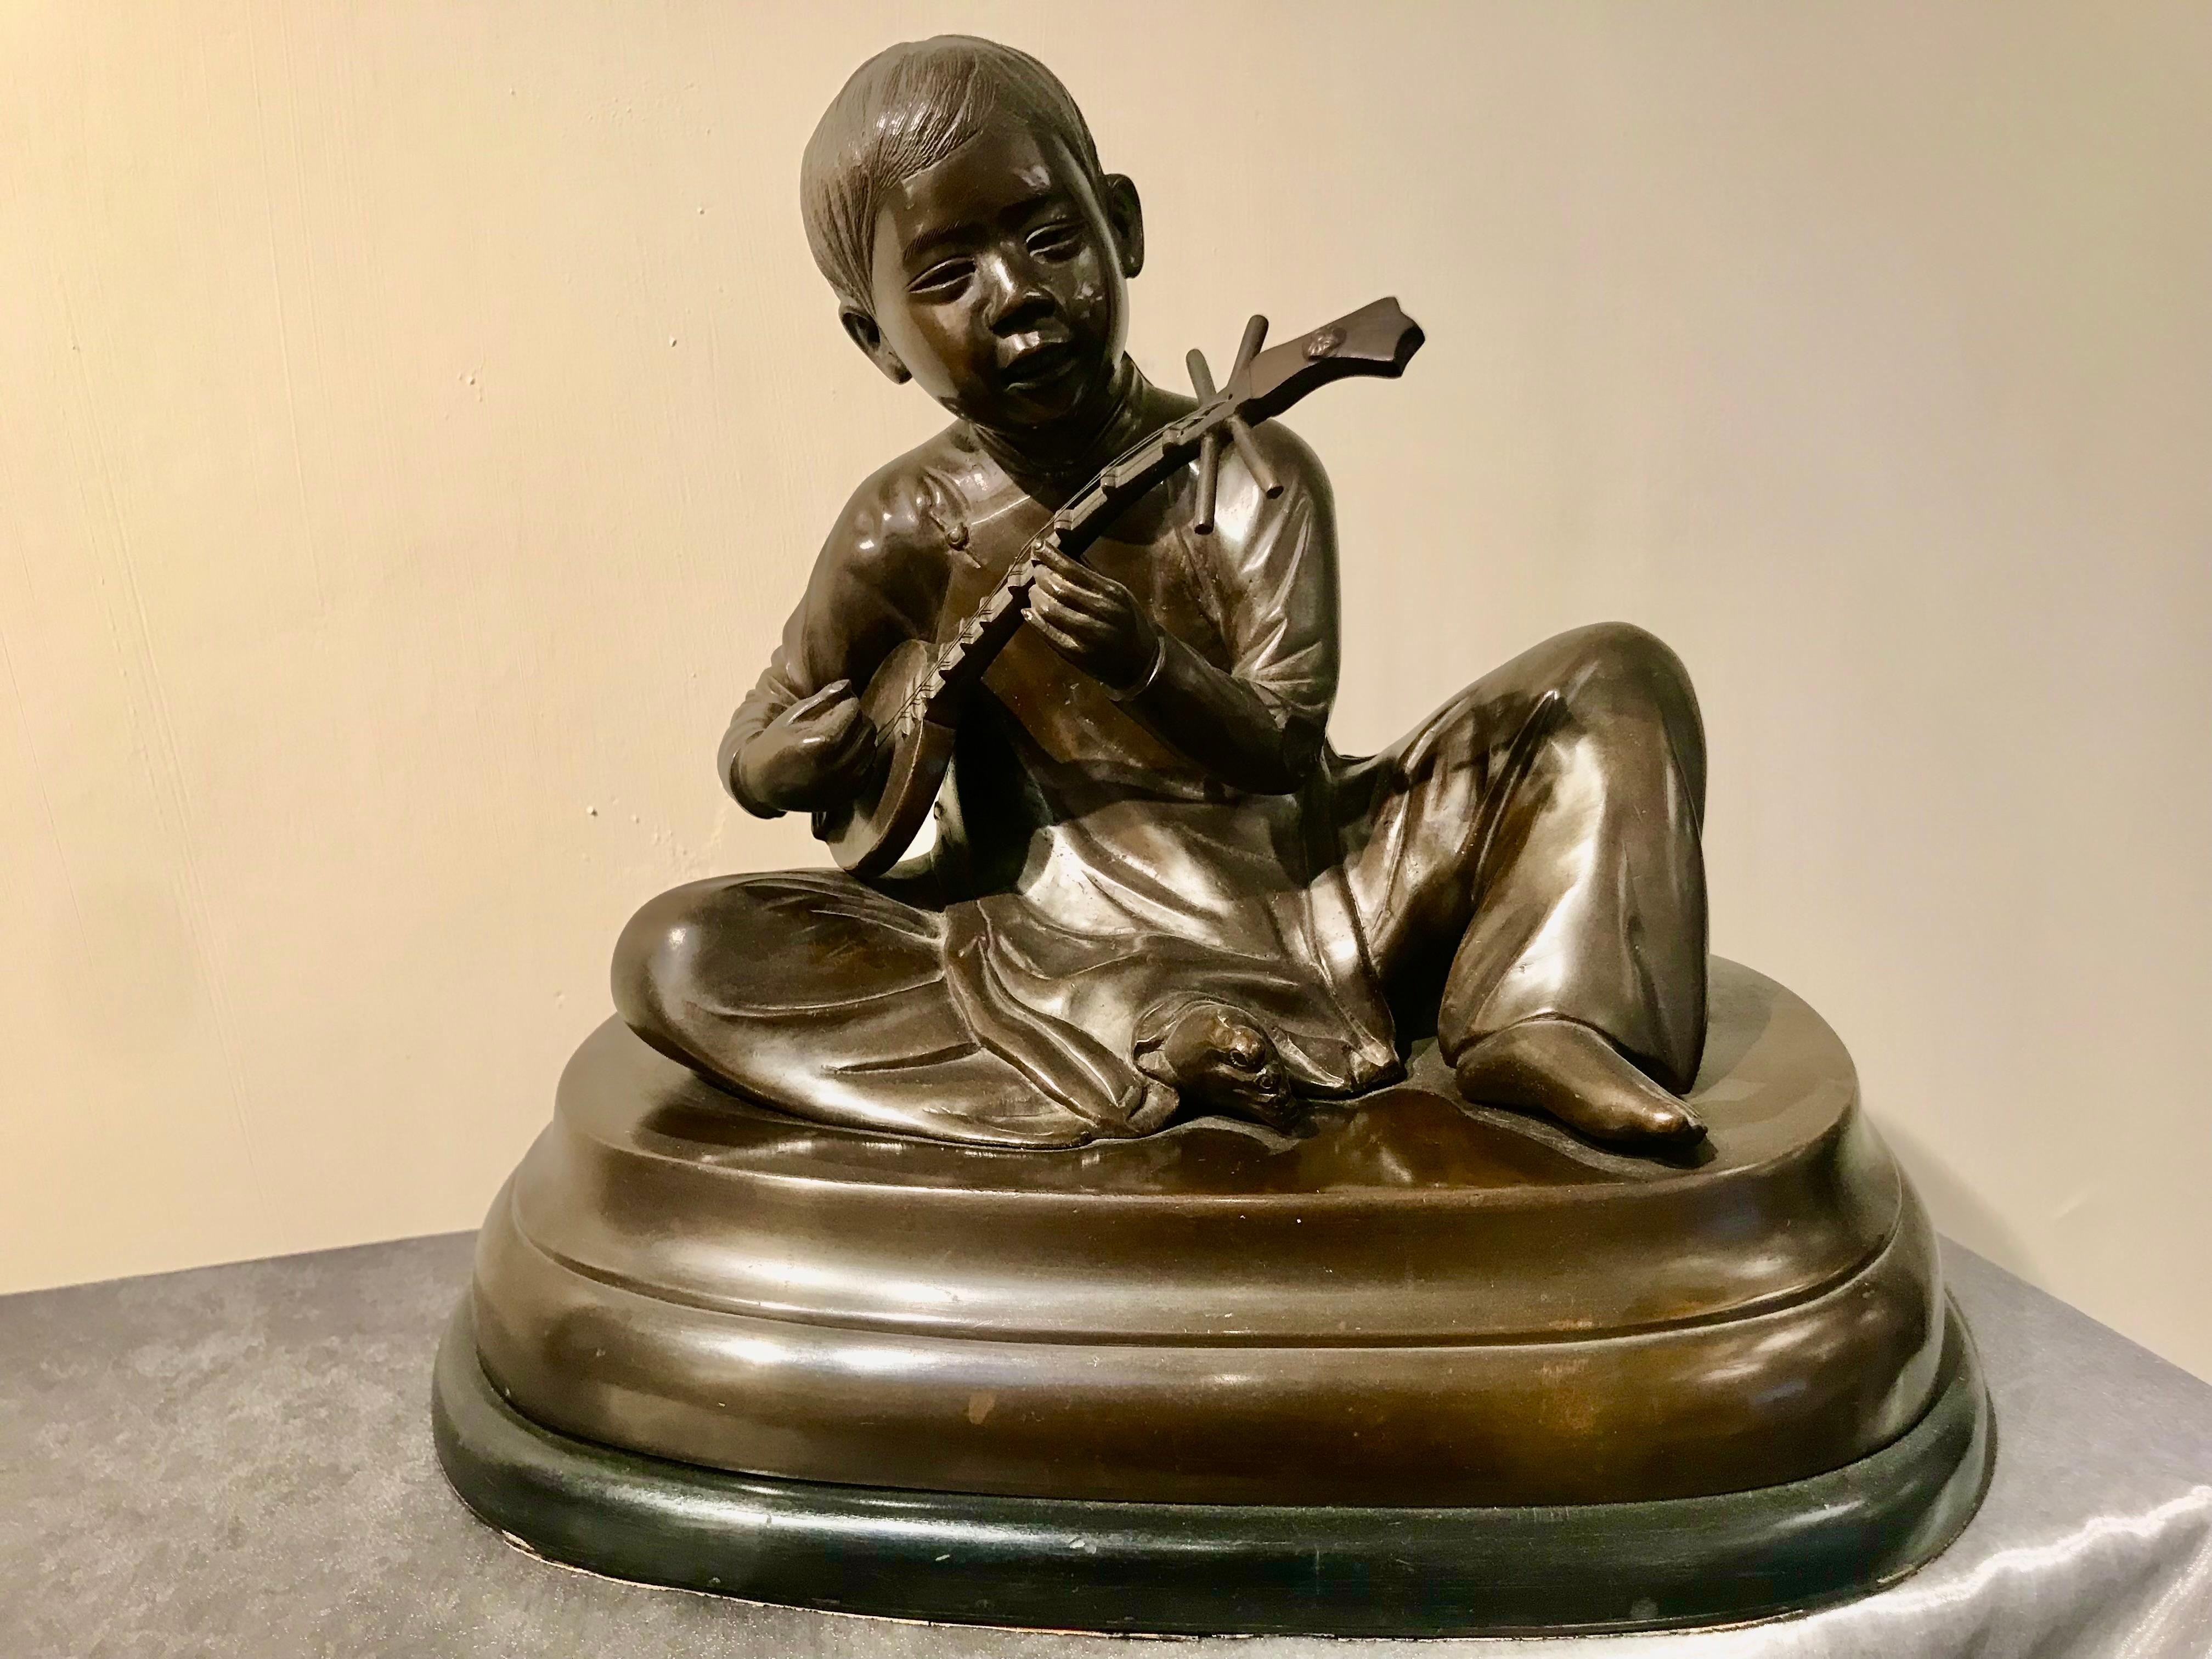 Skulptur „Der junge Musiker“, Bronze, patiniert, nicht signiert, auf Holzsockel, Frankreich, 19 Jhdt.

H 25 cm, B 35 cm , T 20 cm

Instrument ist locker eingelegt, kann herausgenommen werden.
